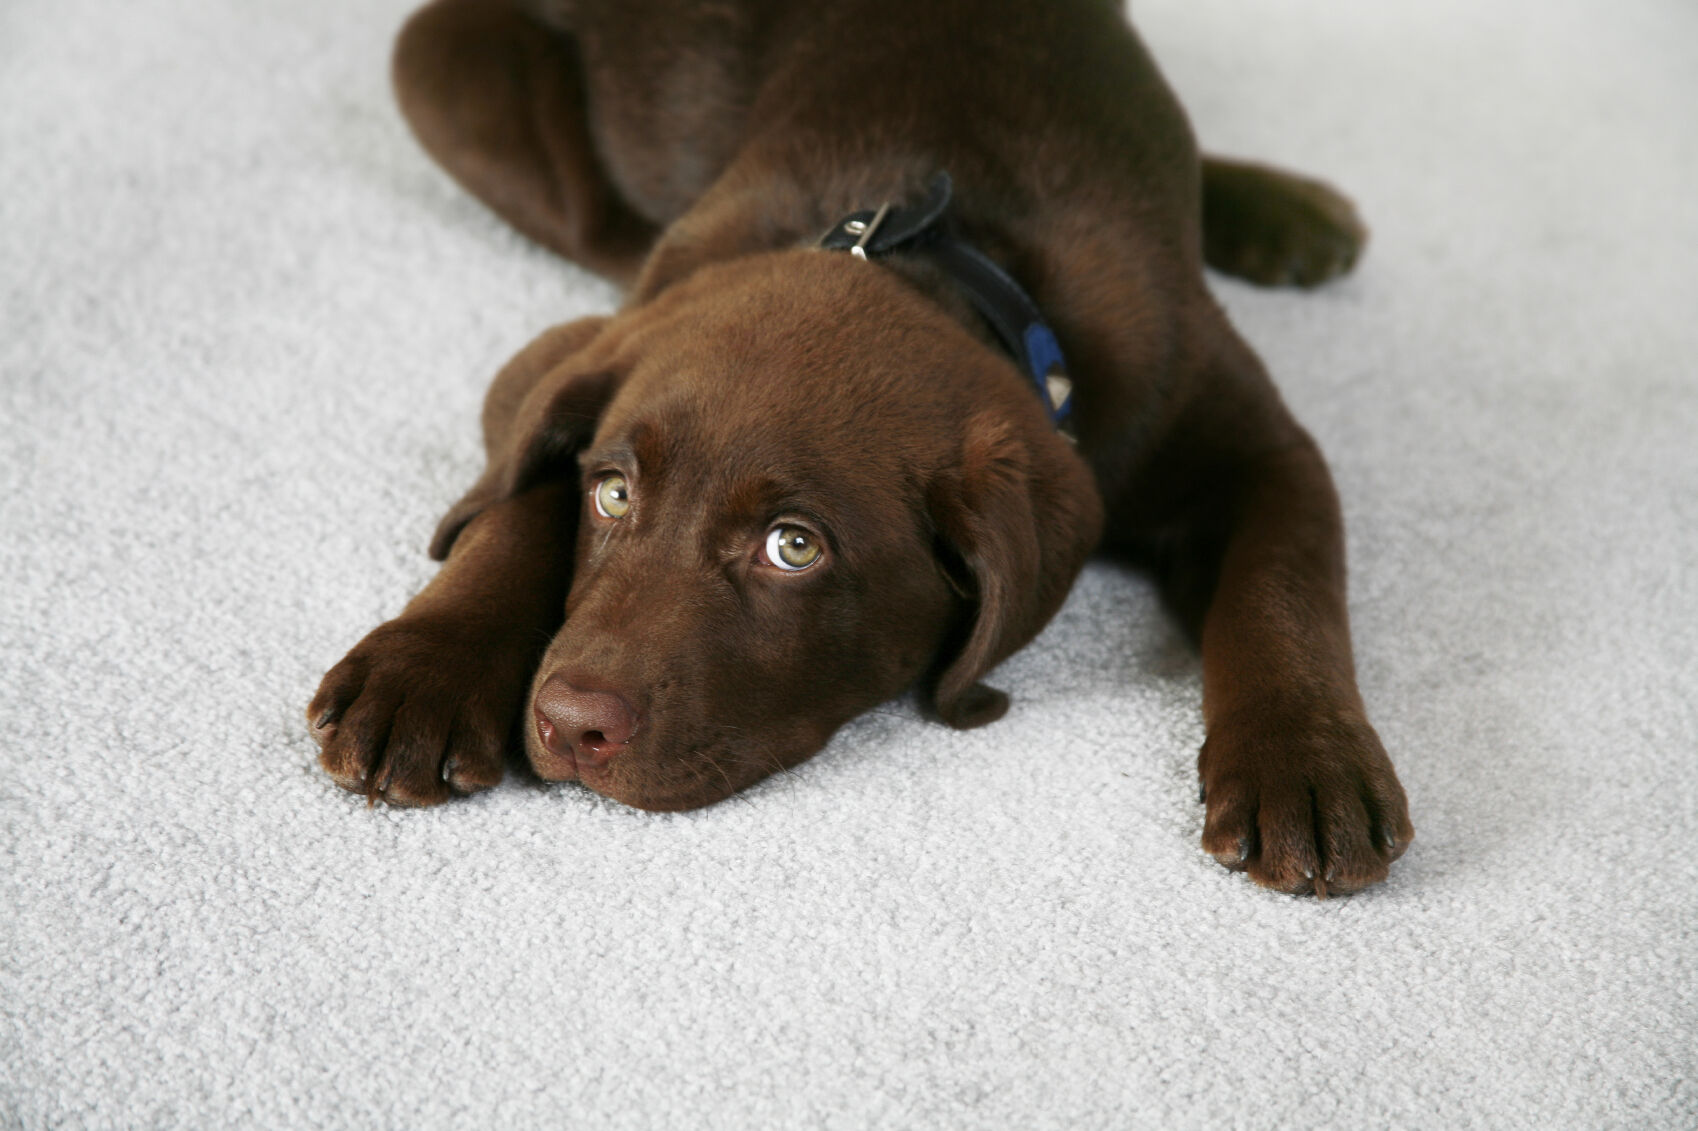 Adorable Chocolate Labrador Retriever Puppy on a Light Color Carpet